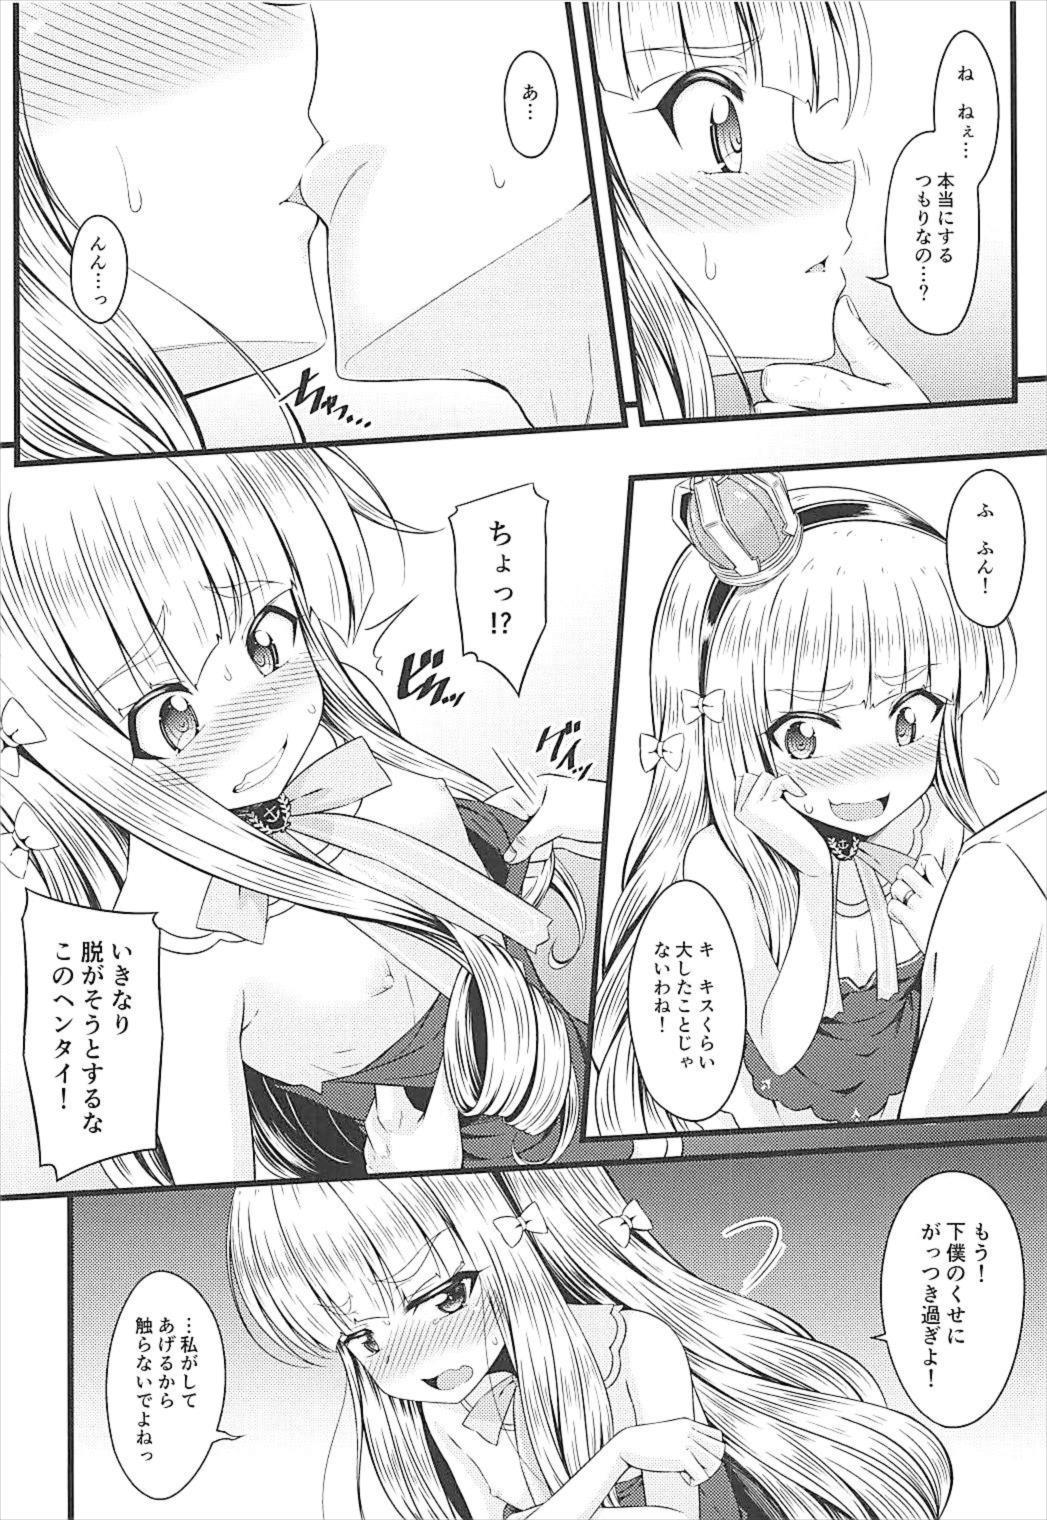 Blowing Chiisai no wa Kouki no Shirushi - Azur lane No Condom - Page 5